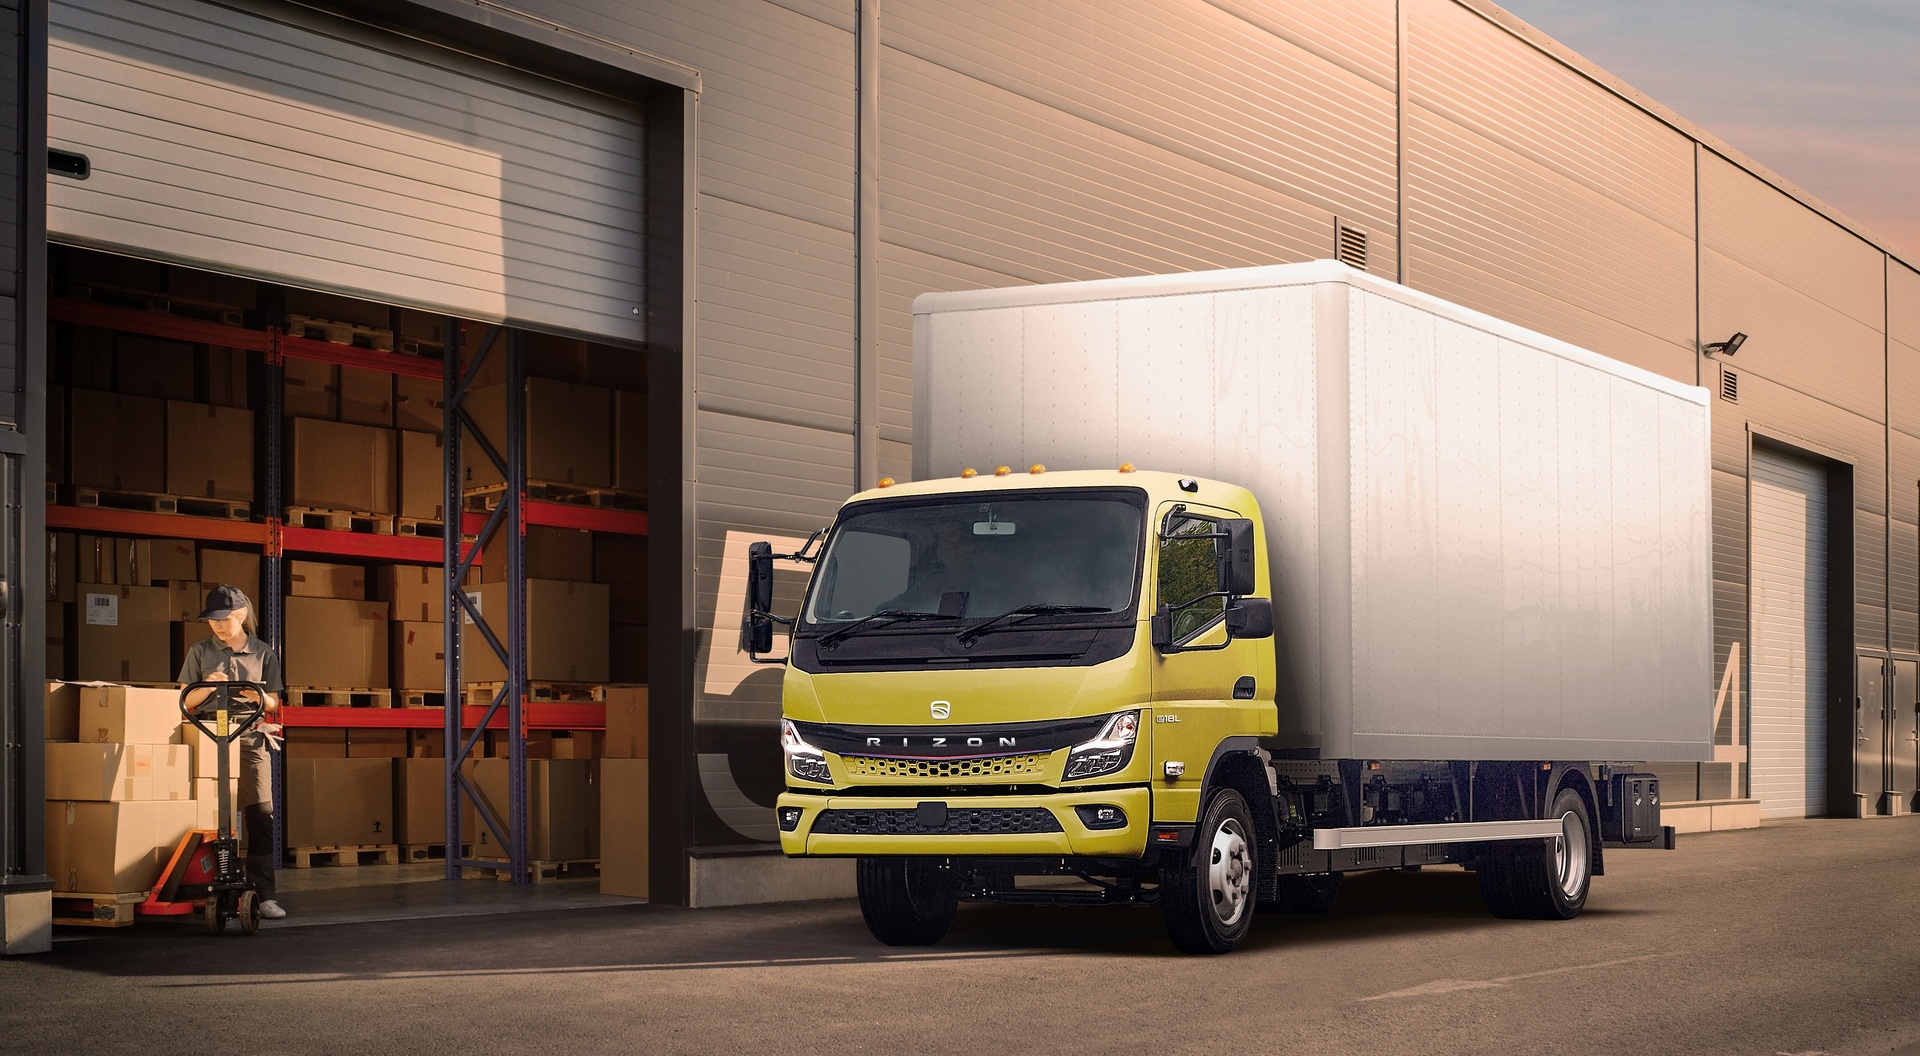 Daimler Truck Marke RIZON erhält U.S.-Zulassung für elektrische Lkw